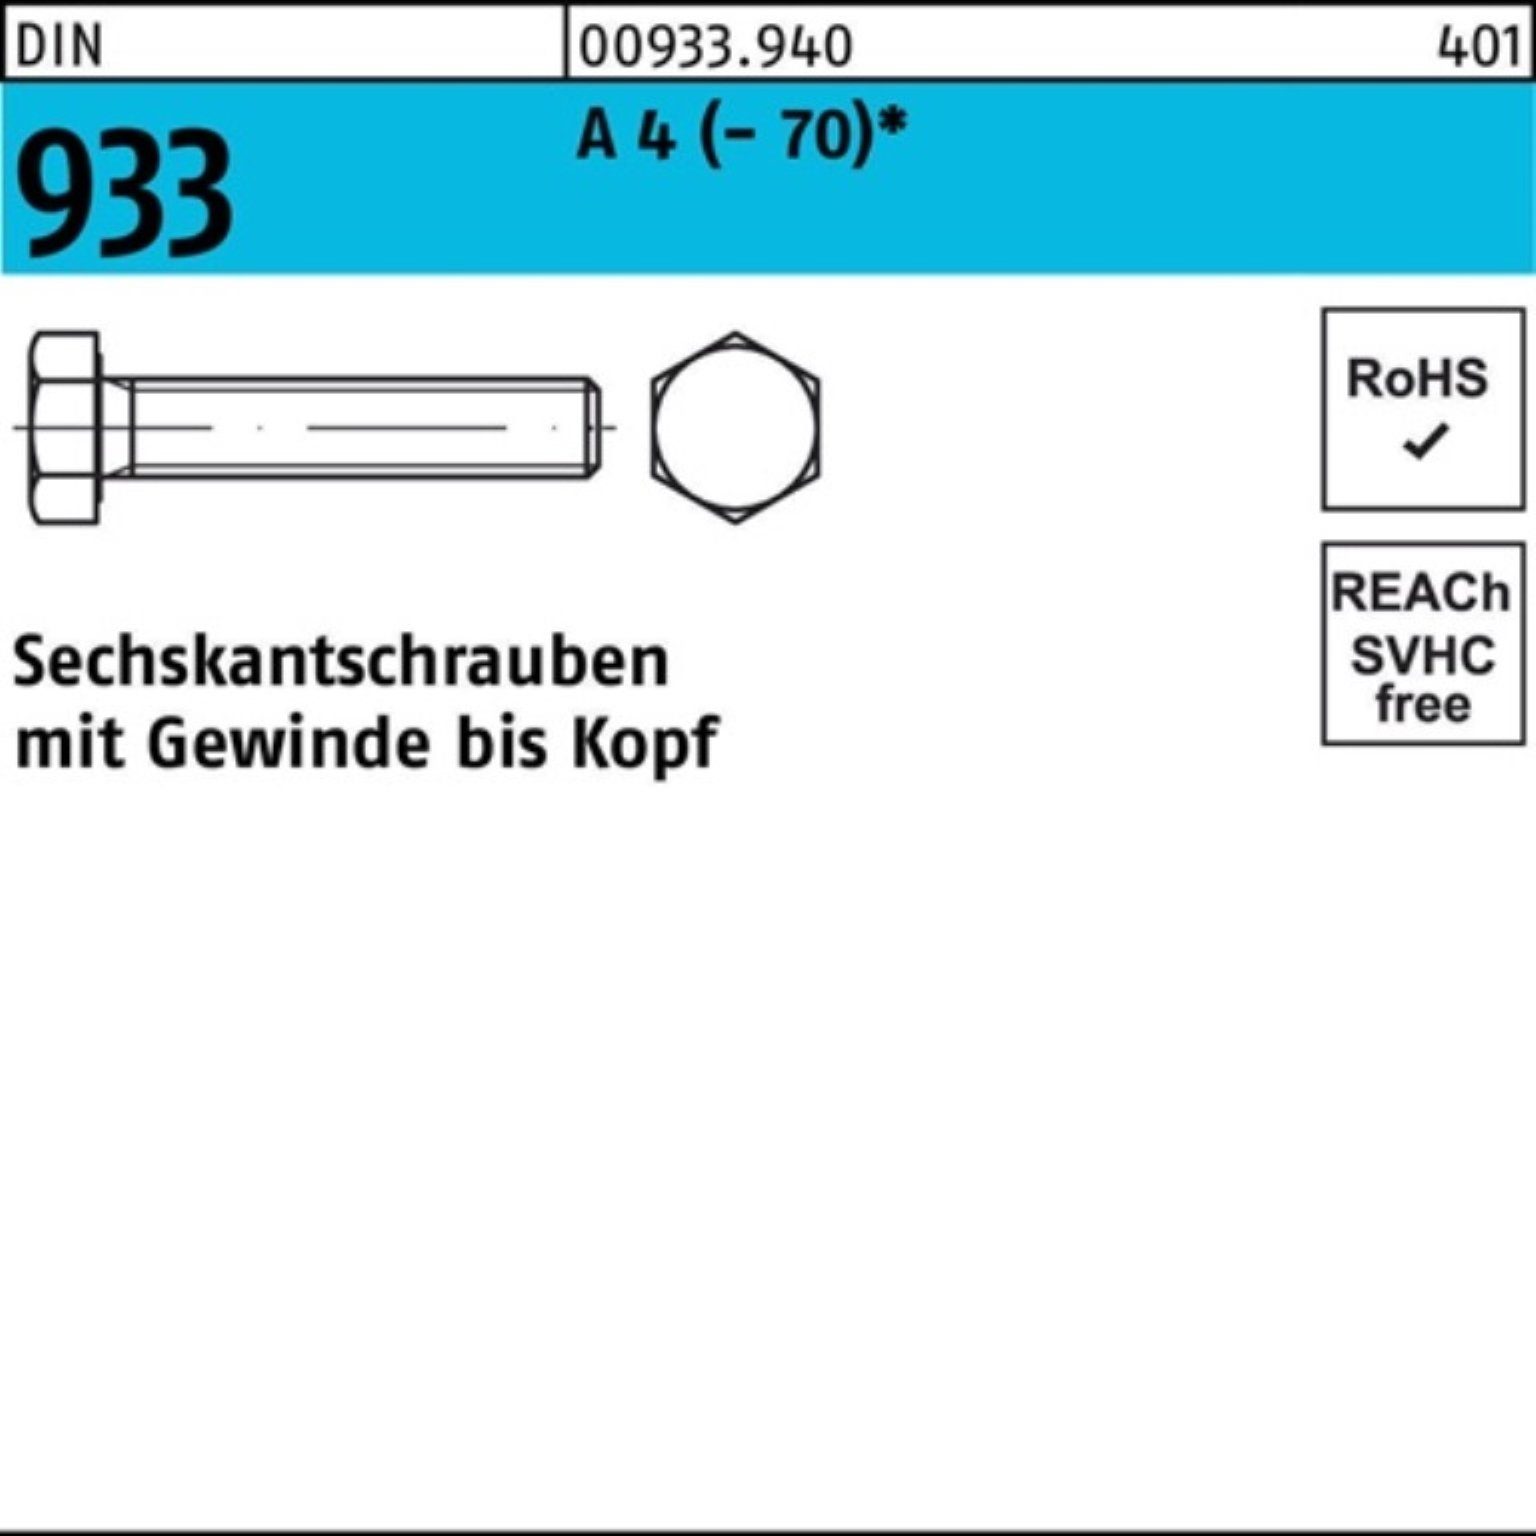 Stück Sechskantschraube 933 Pack 95 1 DIN 100er (70) A Sechskantschraube Reyher 4 M12x VG DI